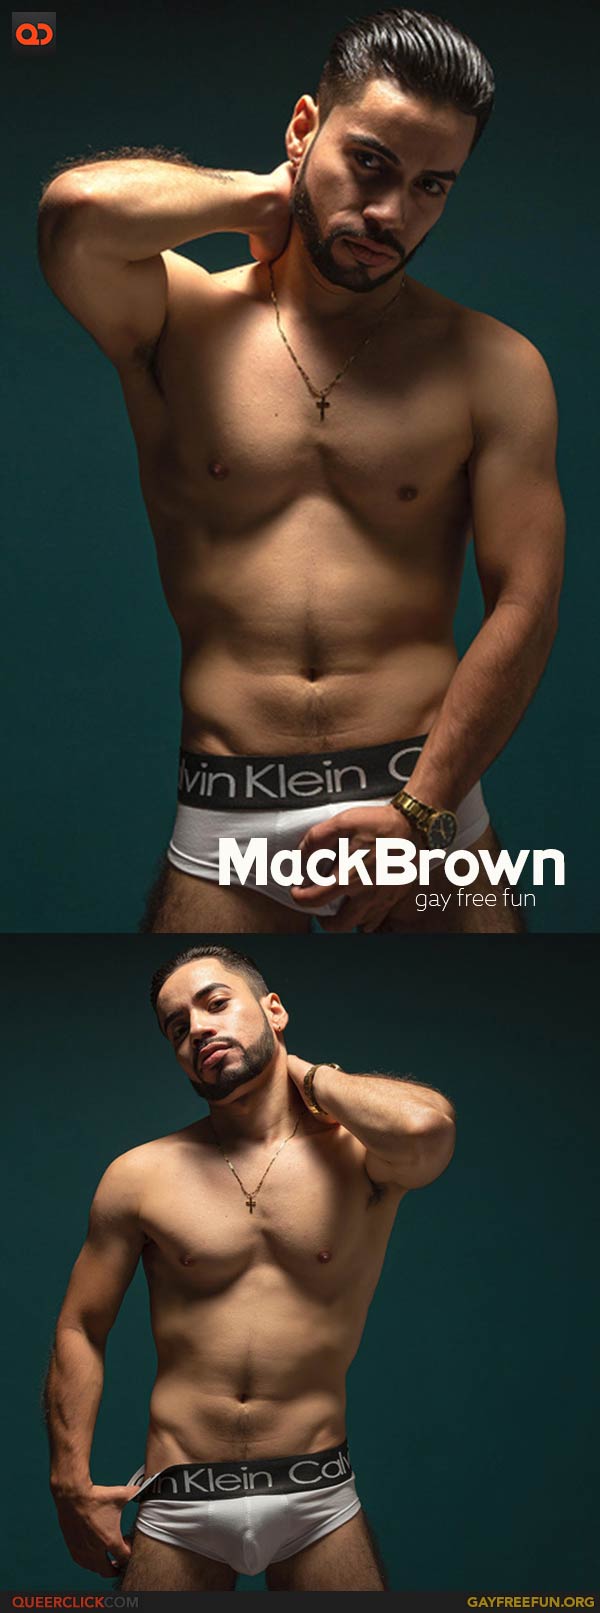 Gay Free Fun: MackBrown